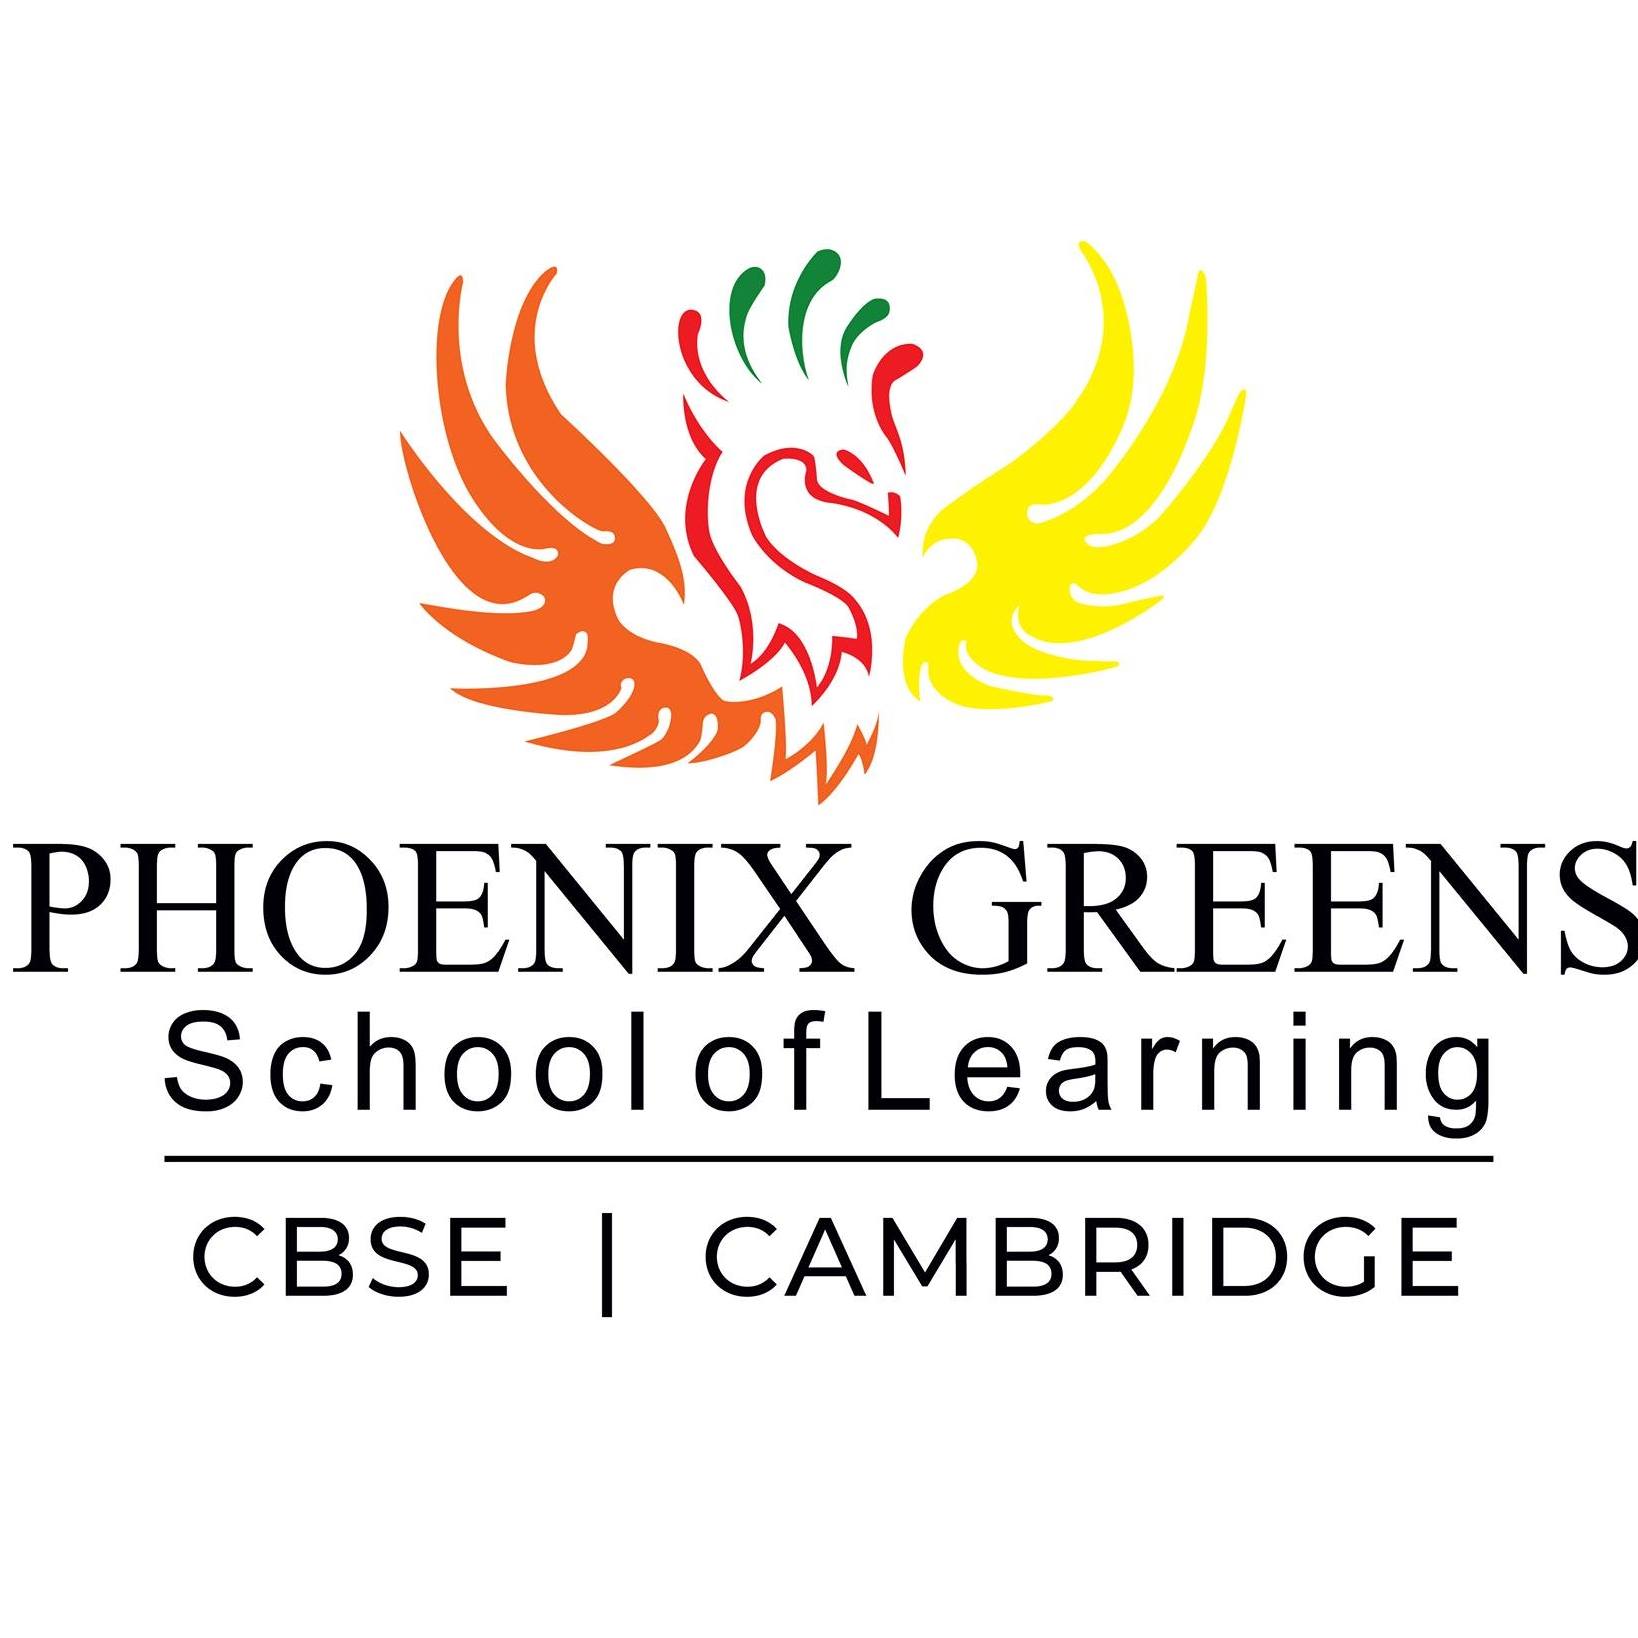 Phoenix Greens School of Learning